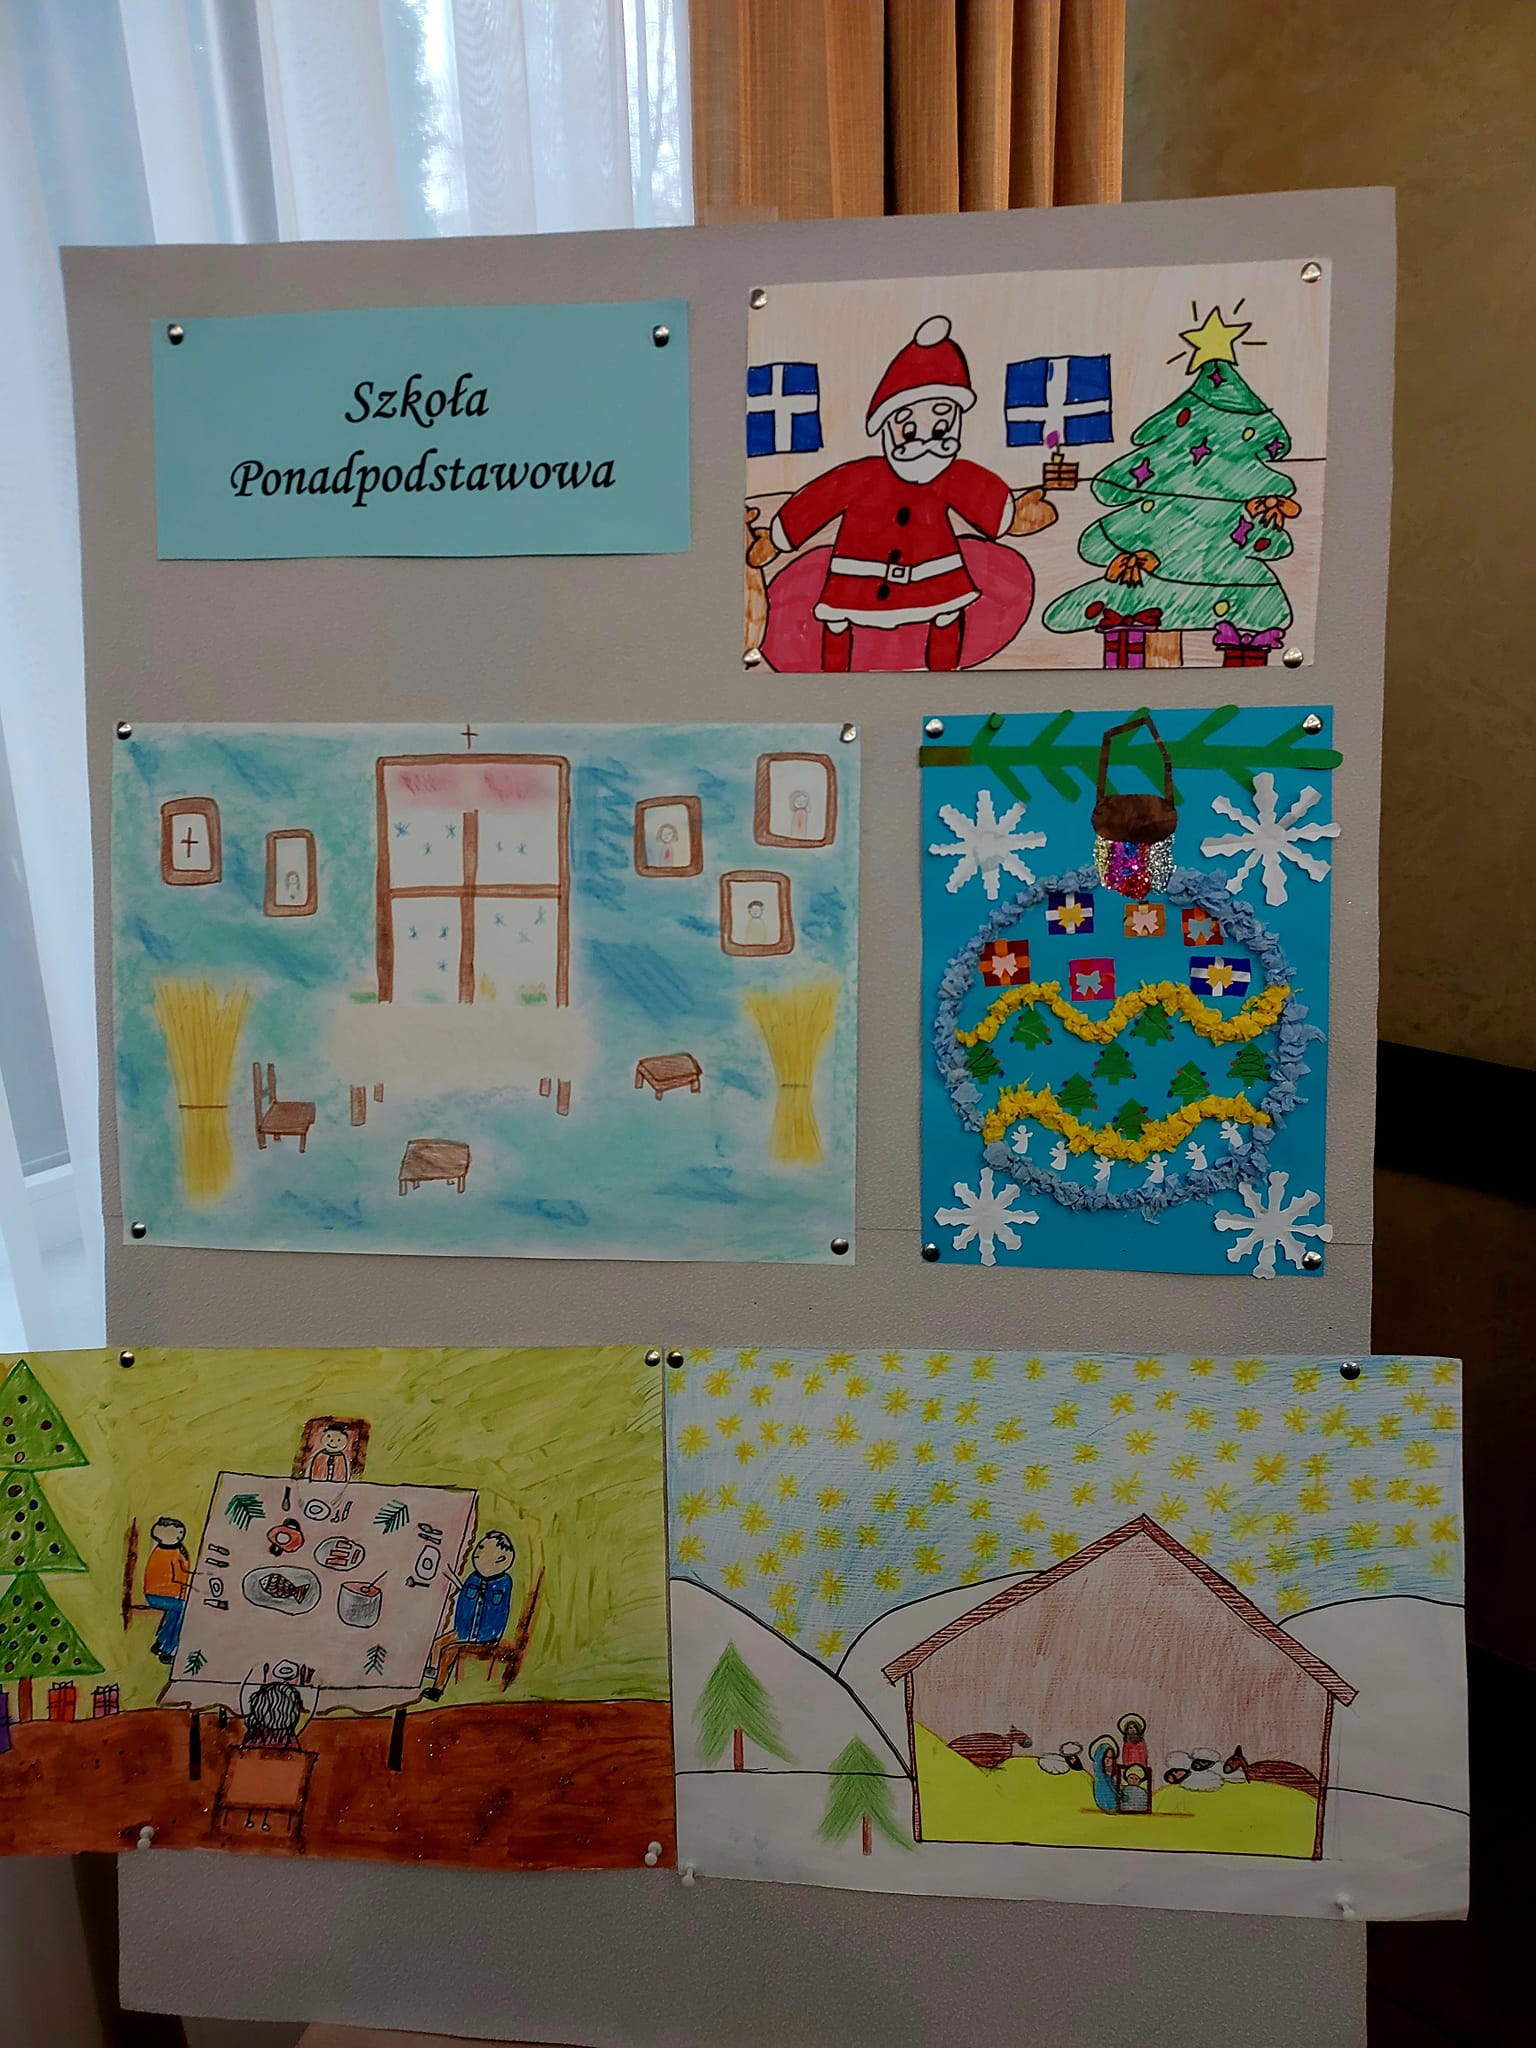   Работы, представленные на мольберте в категории средних школ, участвующих в художественном конкурсе 